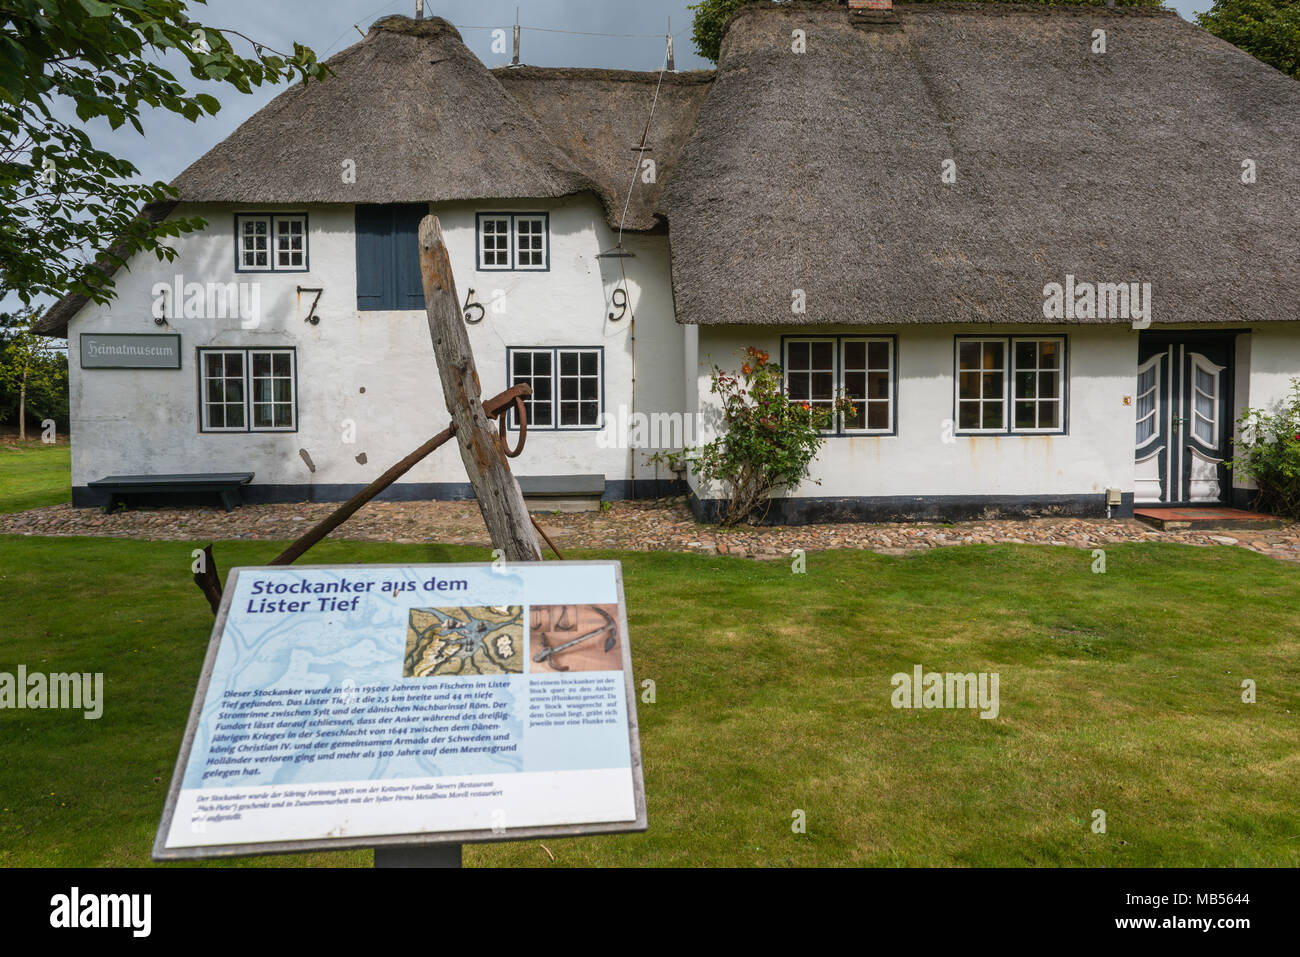 Heimatmuseum oder lokalen Museum, eine traditionelle friesische Haus mit Reetdach, Keitum, Nordsee Insel Sylt, Schleswig-Holstein, Deutschland Nord Stockfoto